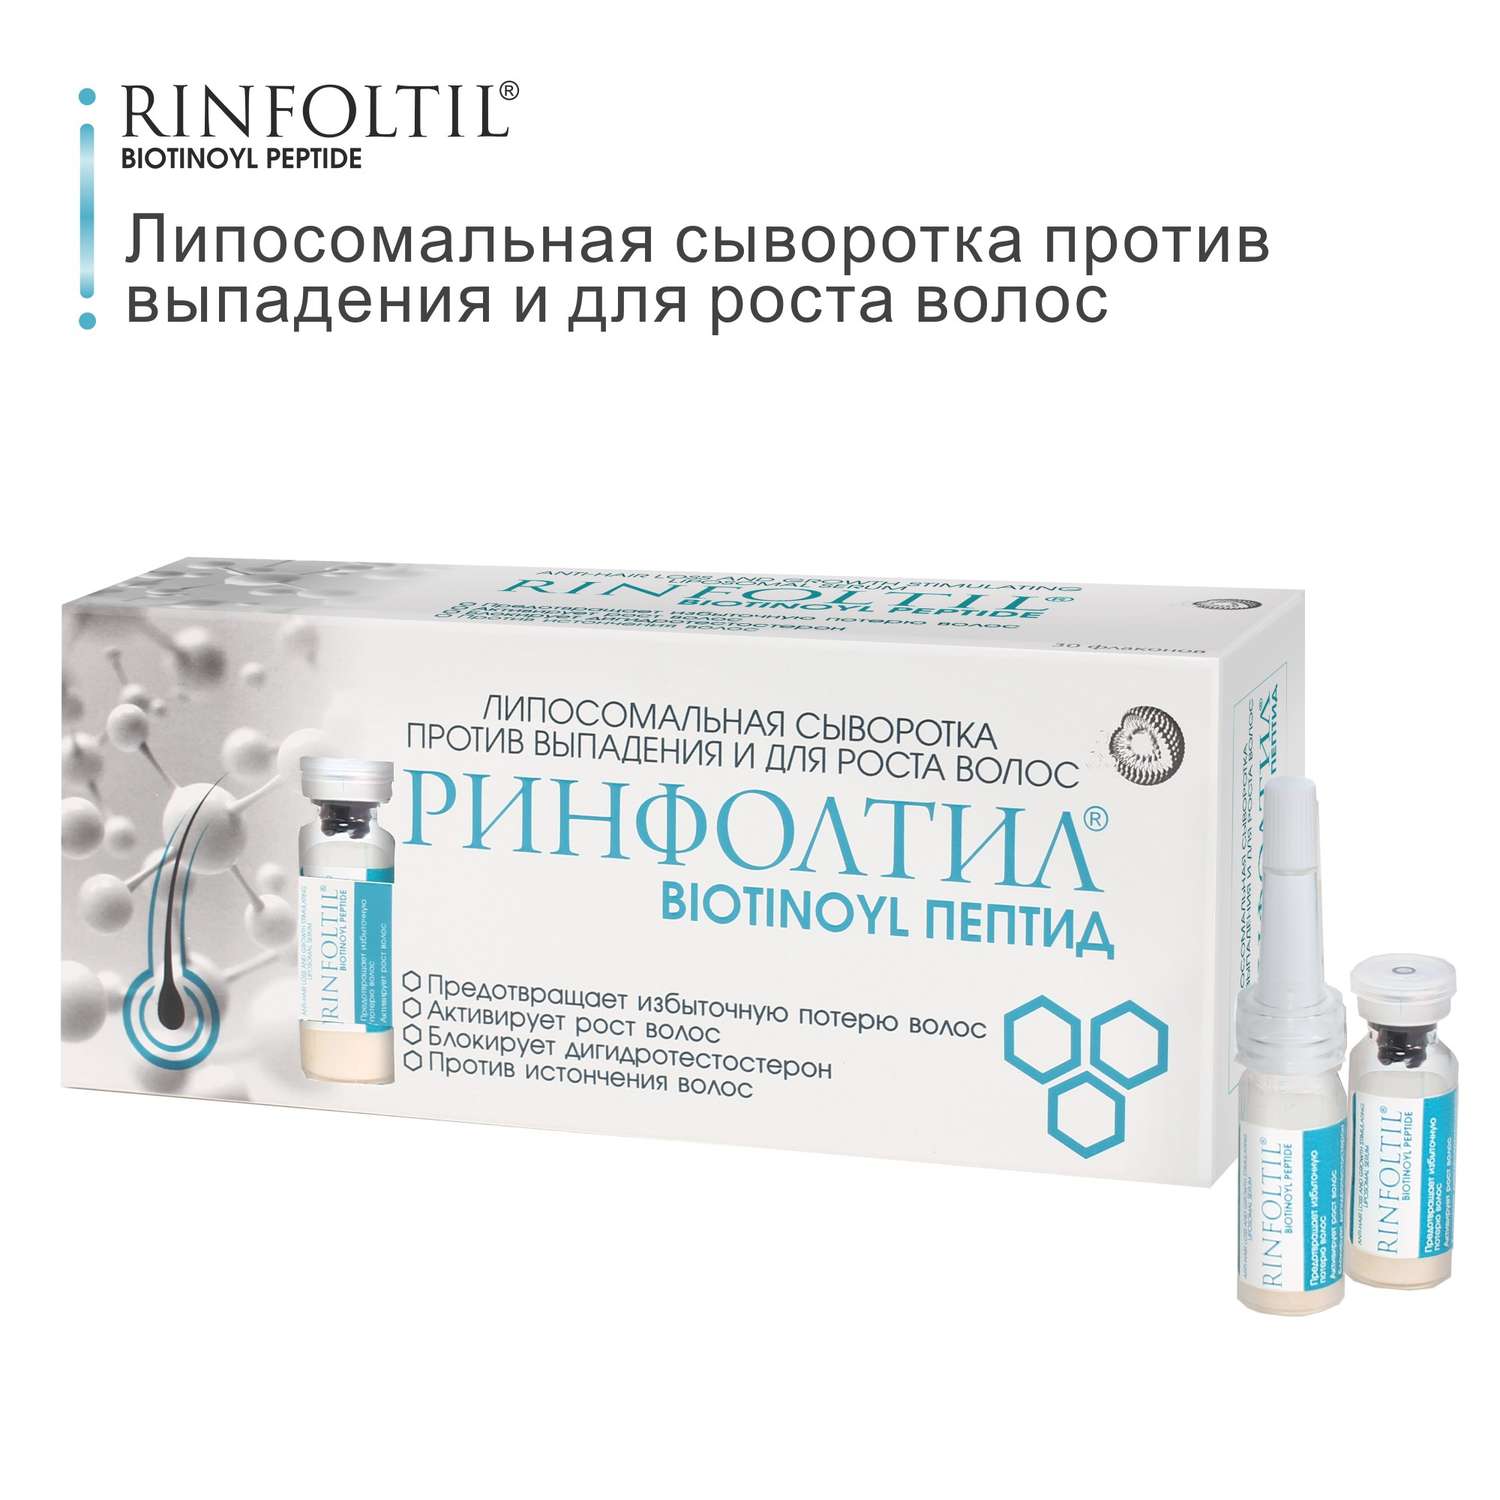 Сыворотка Rinfoltil BIOTINOYL Пептид. Липосомальная против выпадения и для роста волос - фото 2